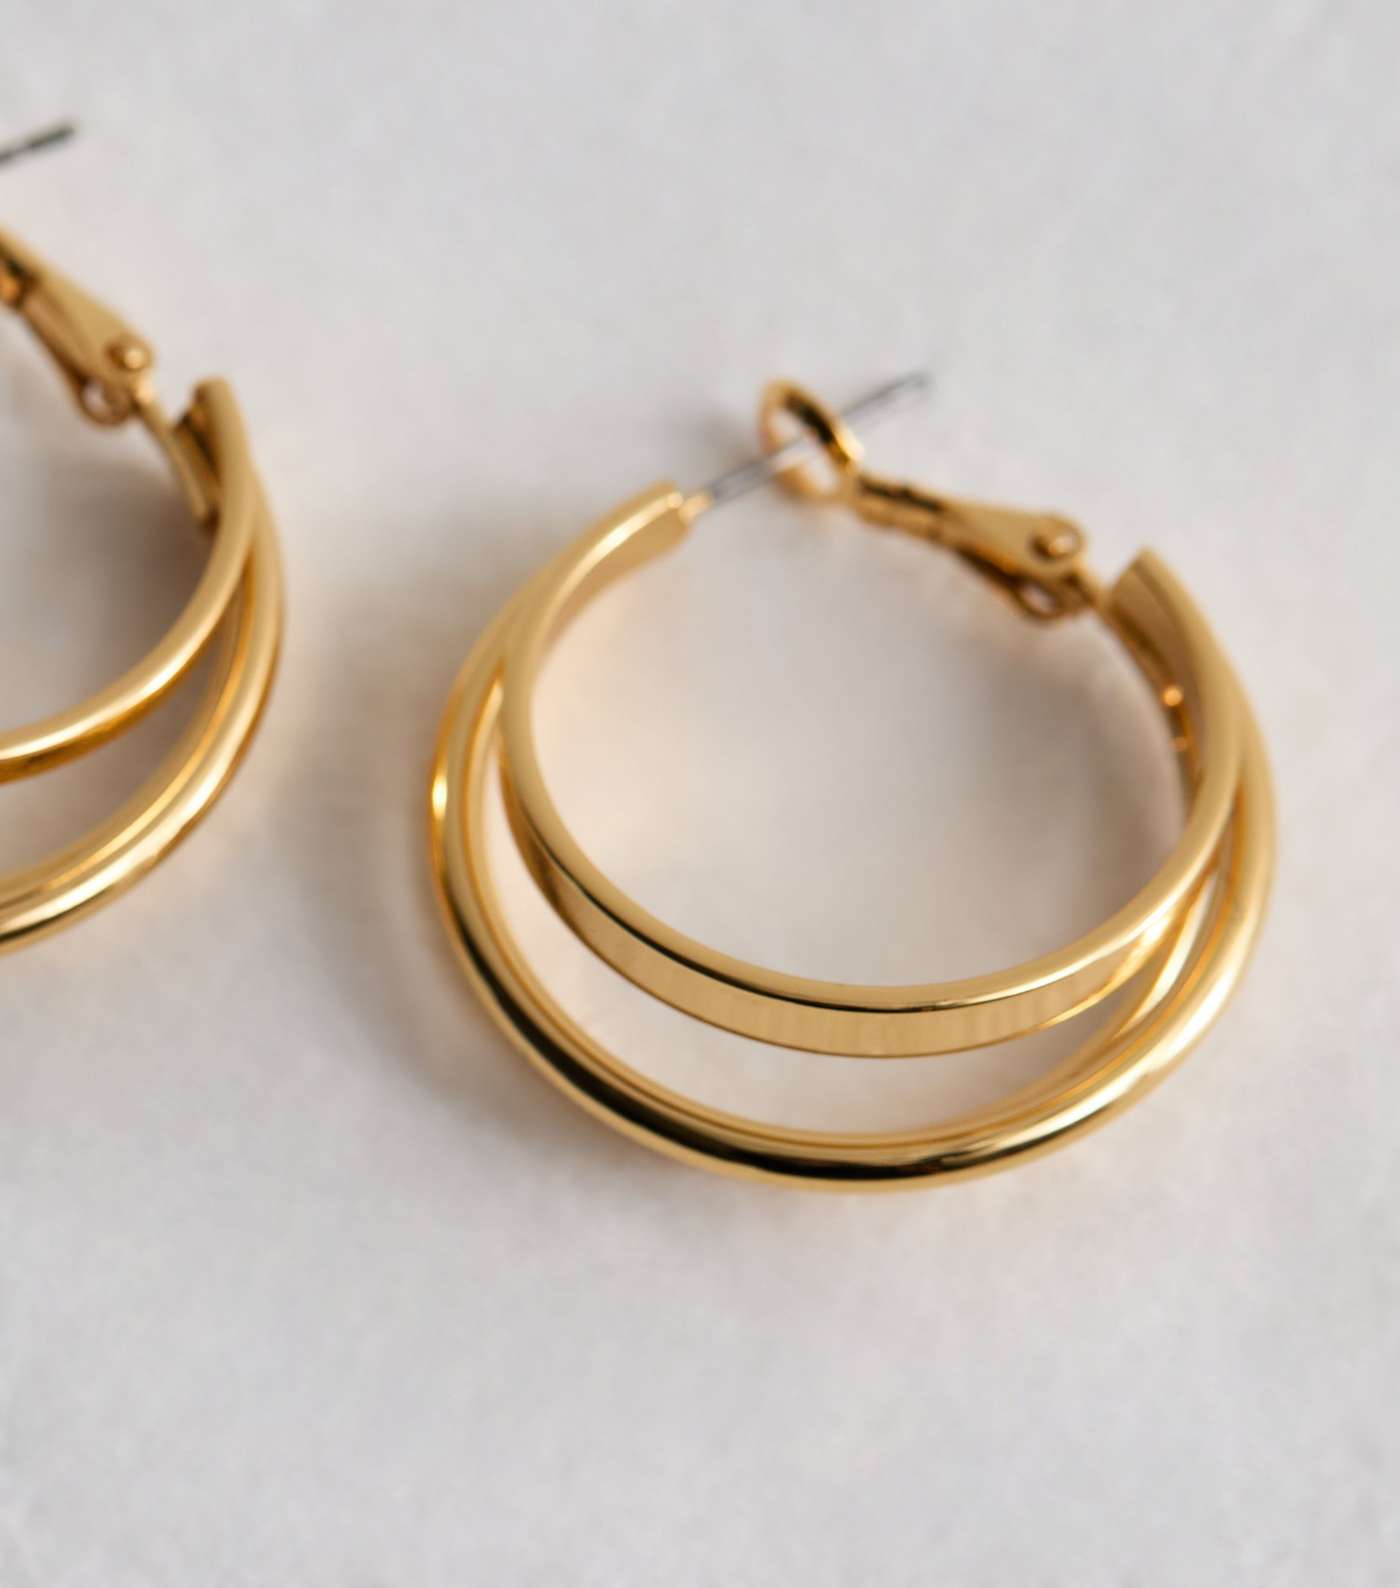 Real Gold Plated Tripe Hoop Earrings Image 4